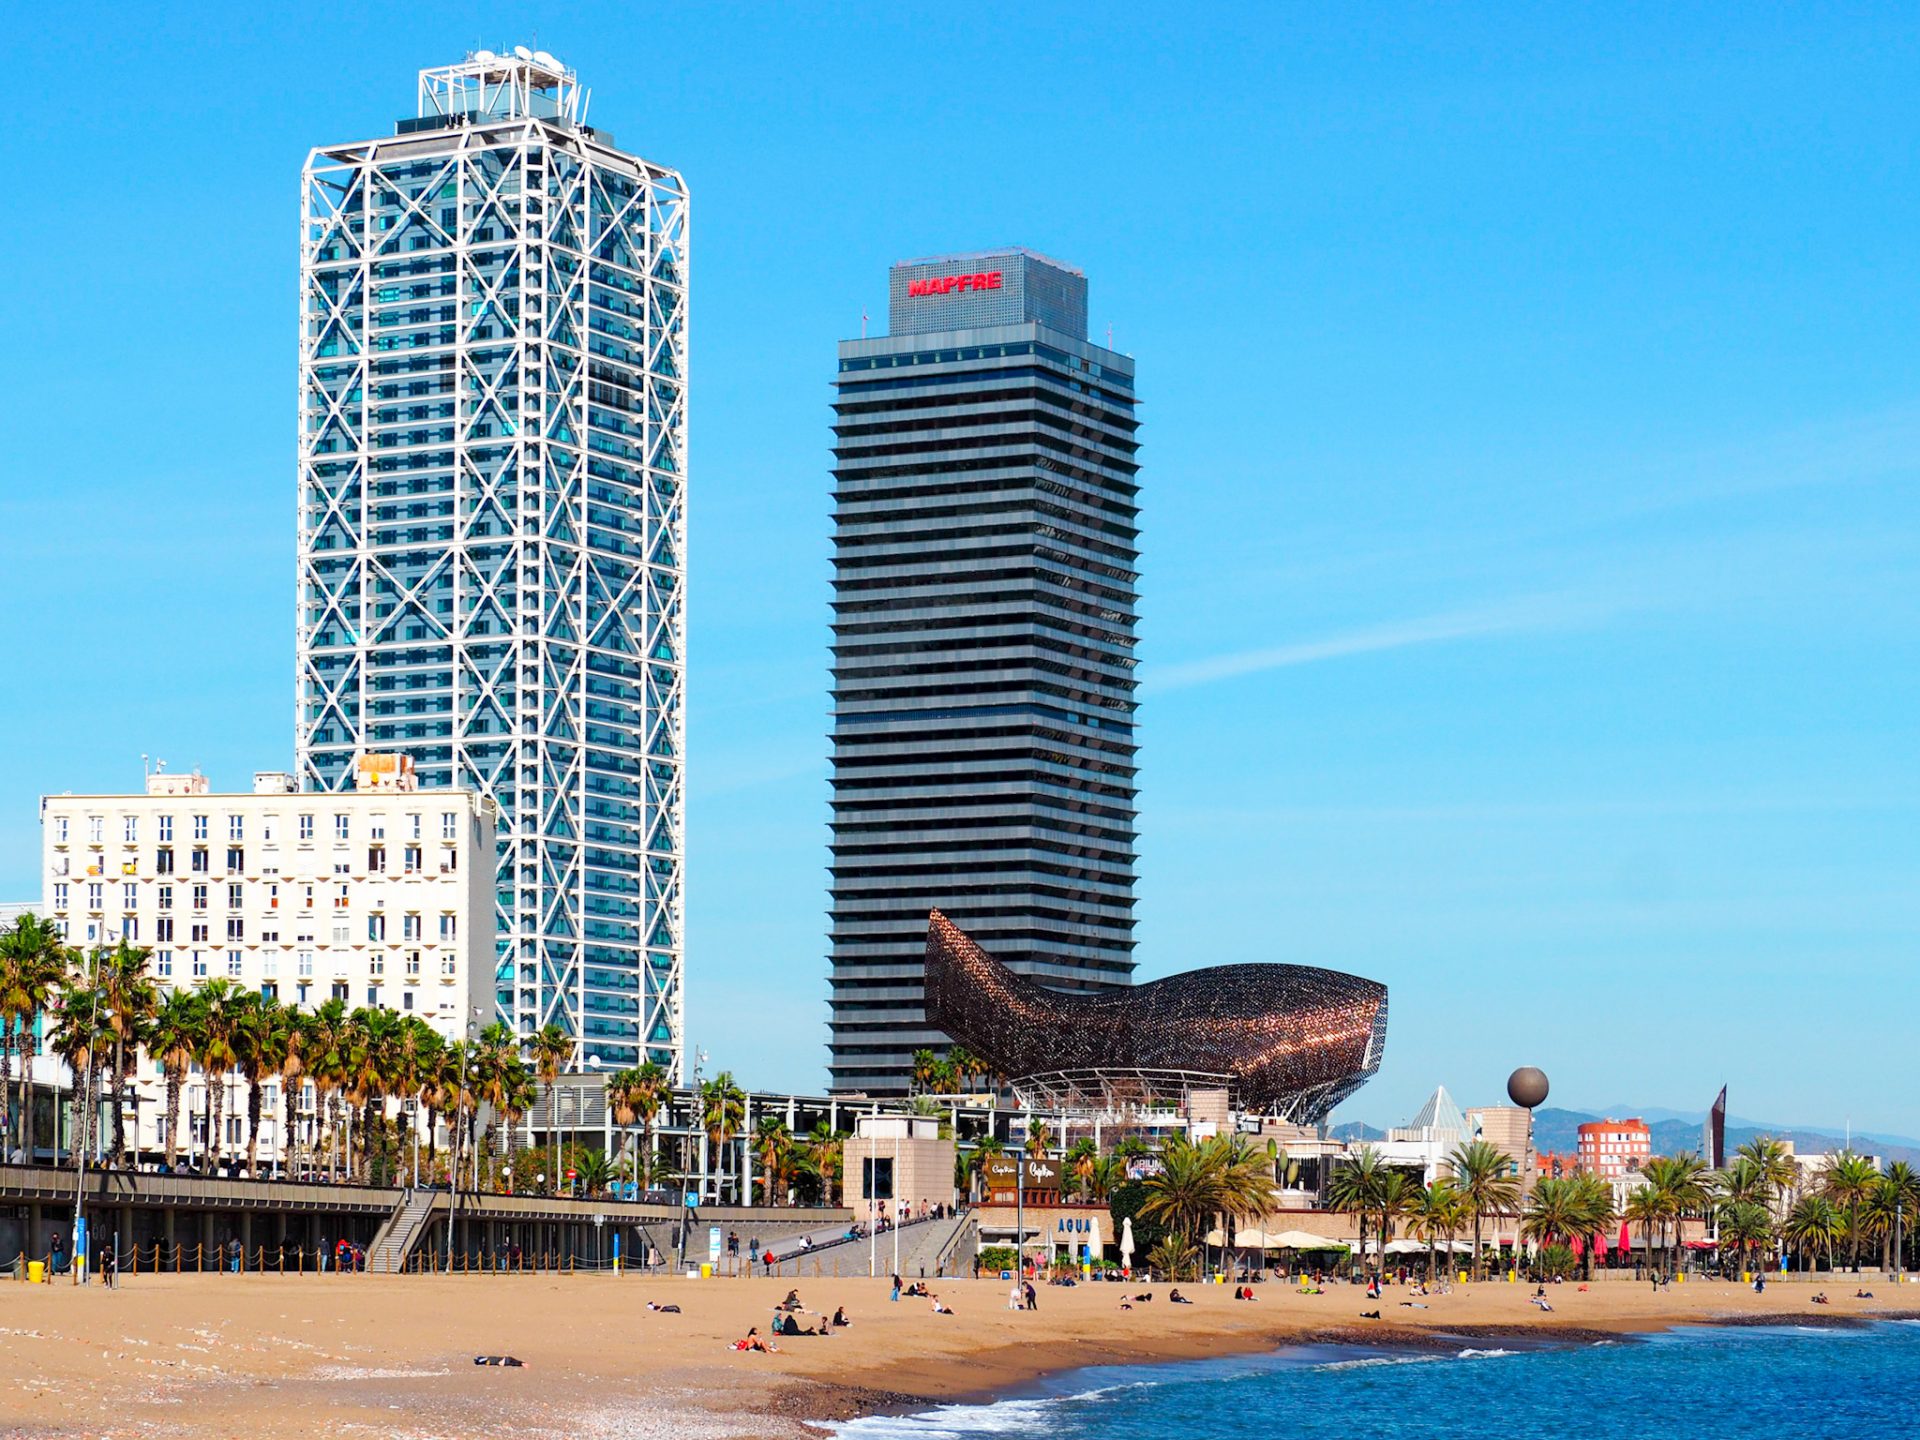 Playa de la barceloneta con las torres mapre y hotel arts